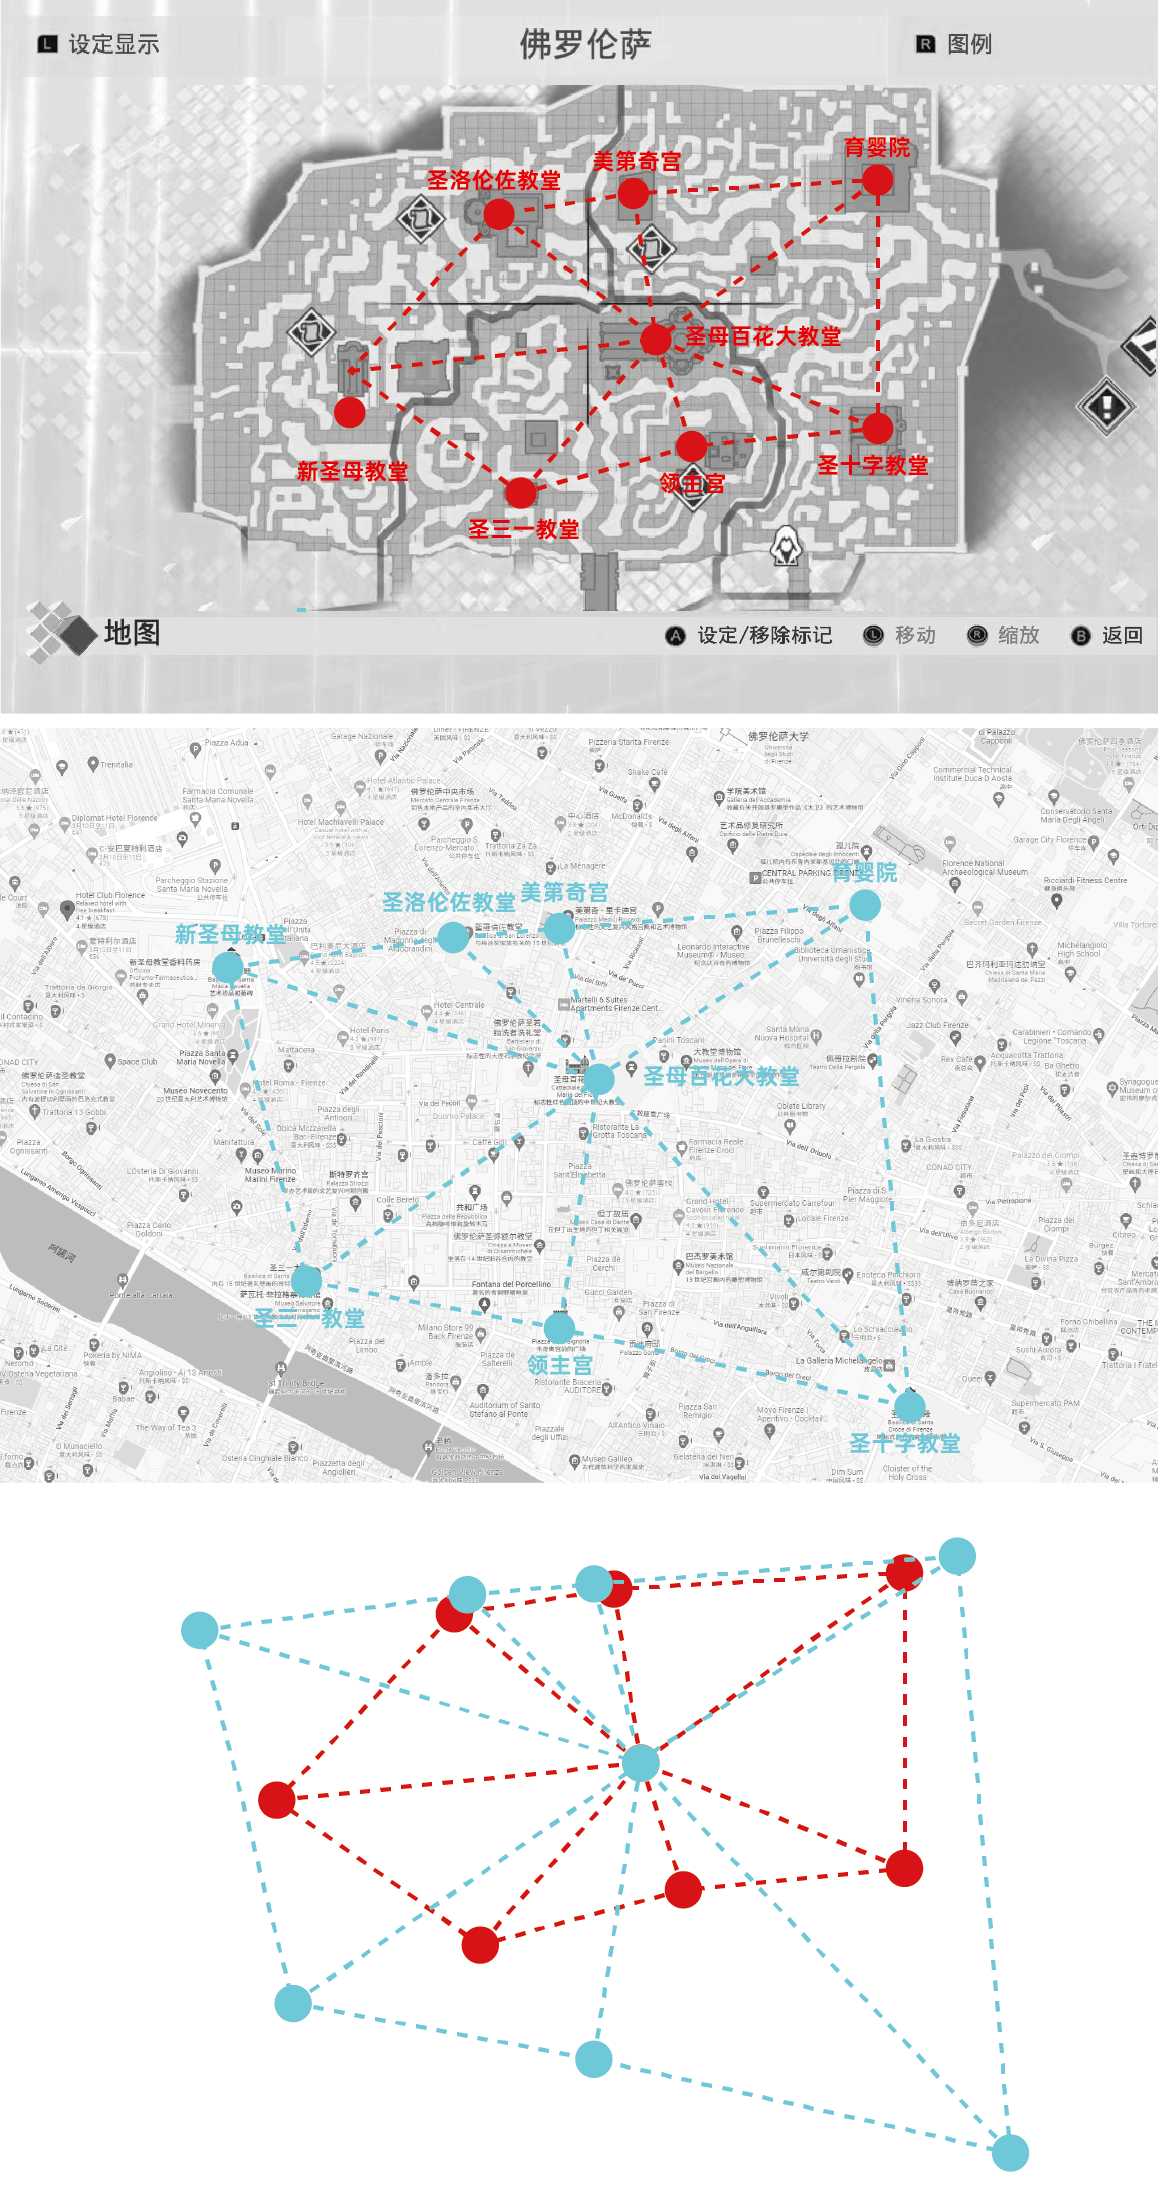 刺客信条中佛罗伦萨（上） google地图中的佛罗伦萨（中） 标志建筑方位拓扑对比（下）